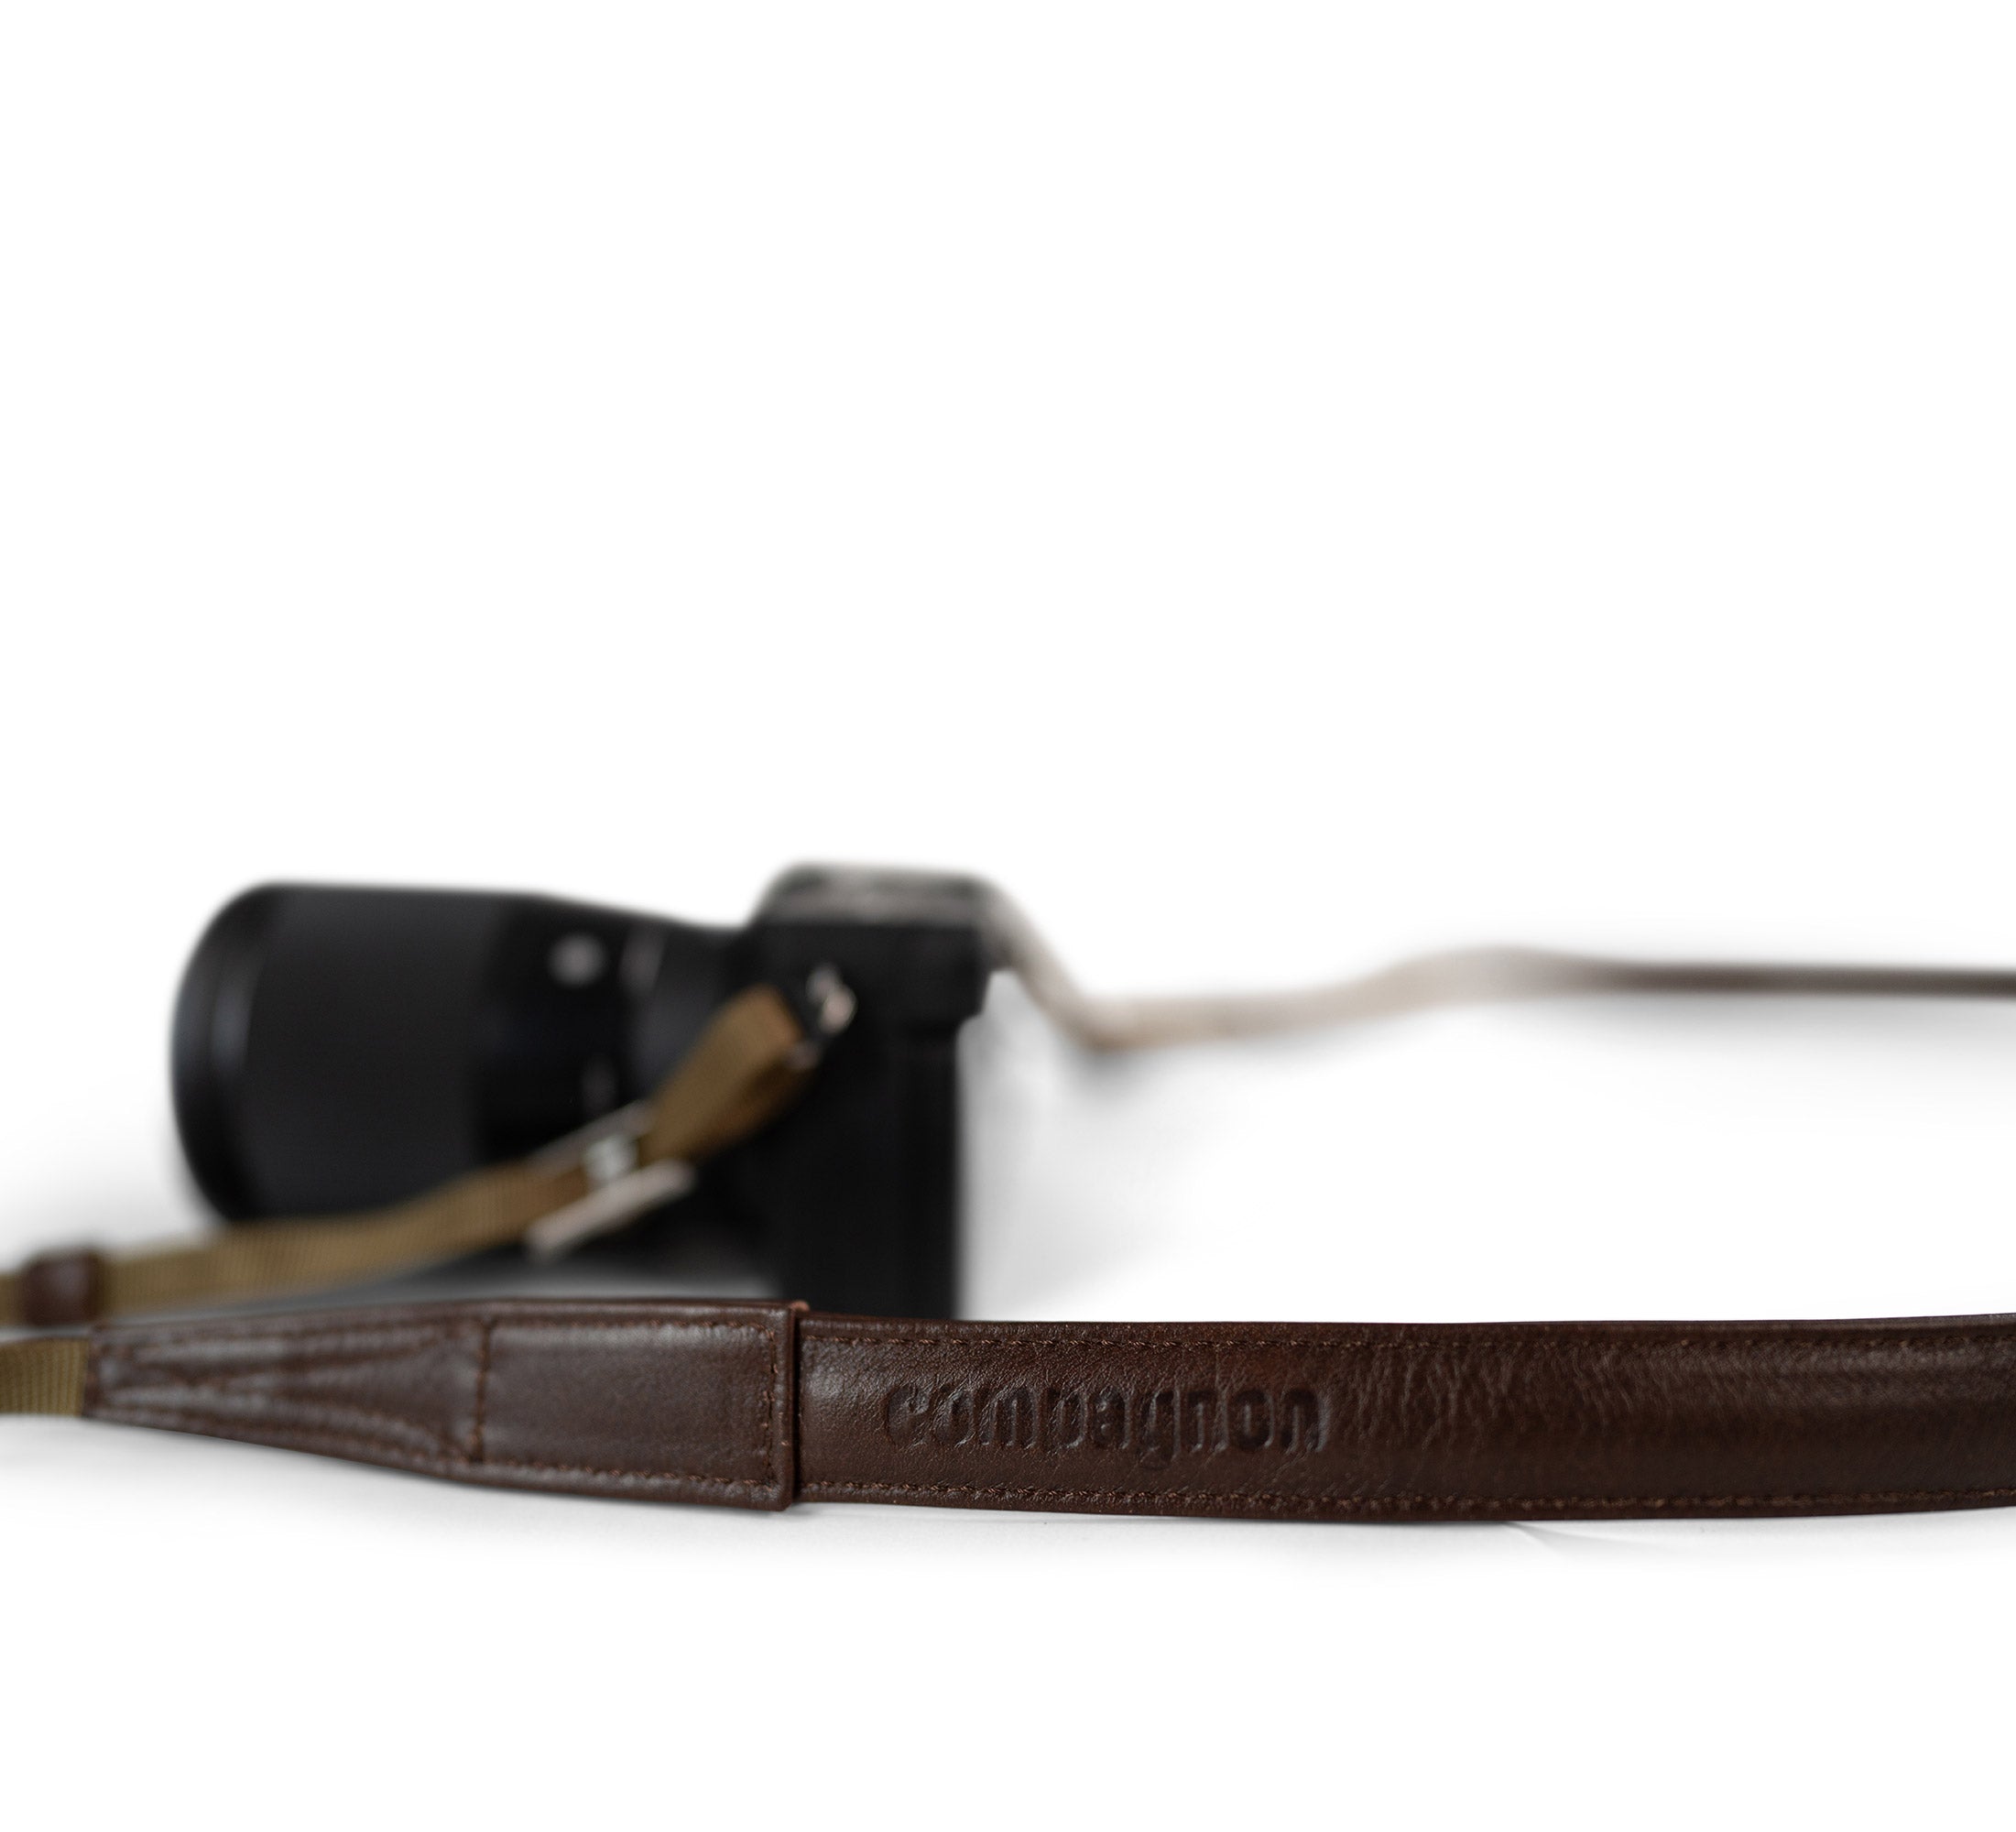 the strap camera strap